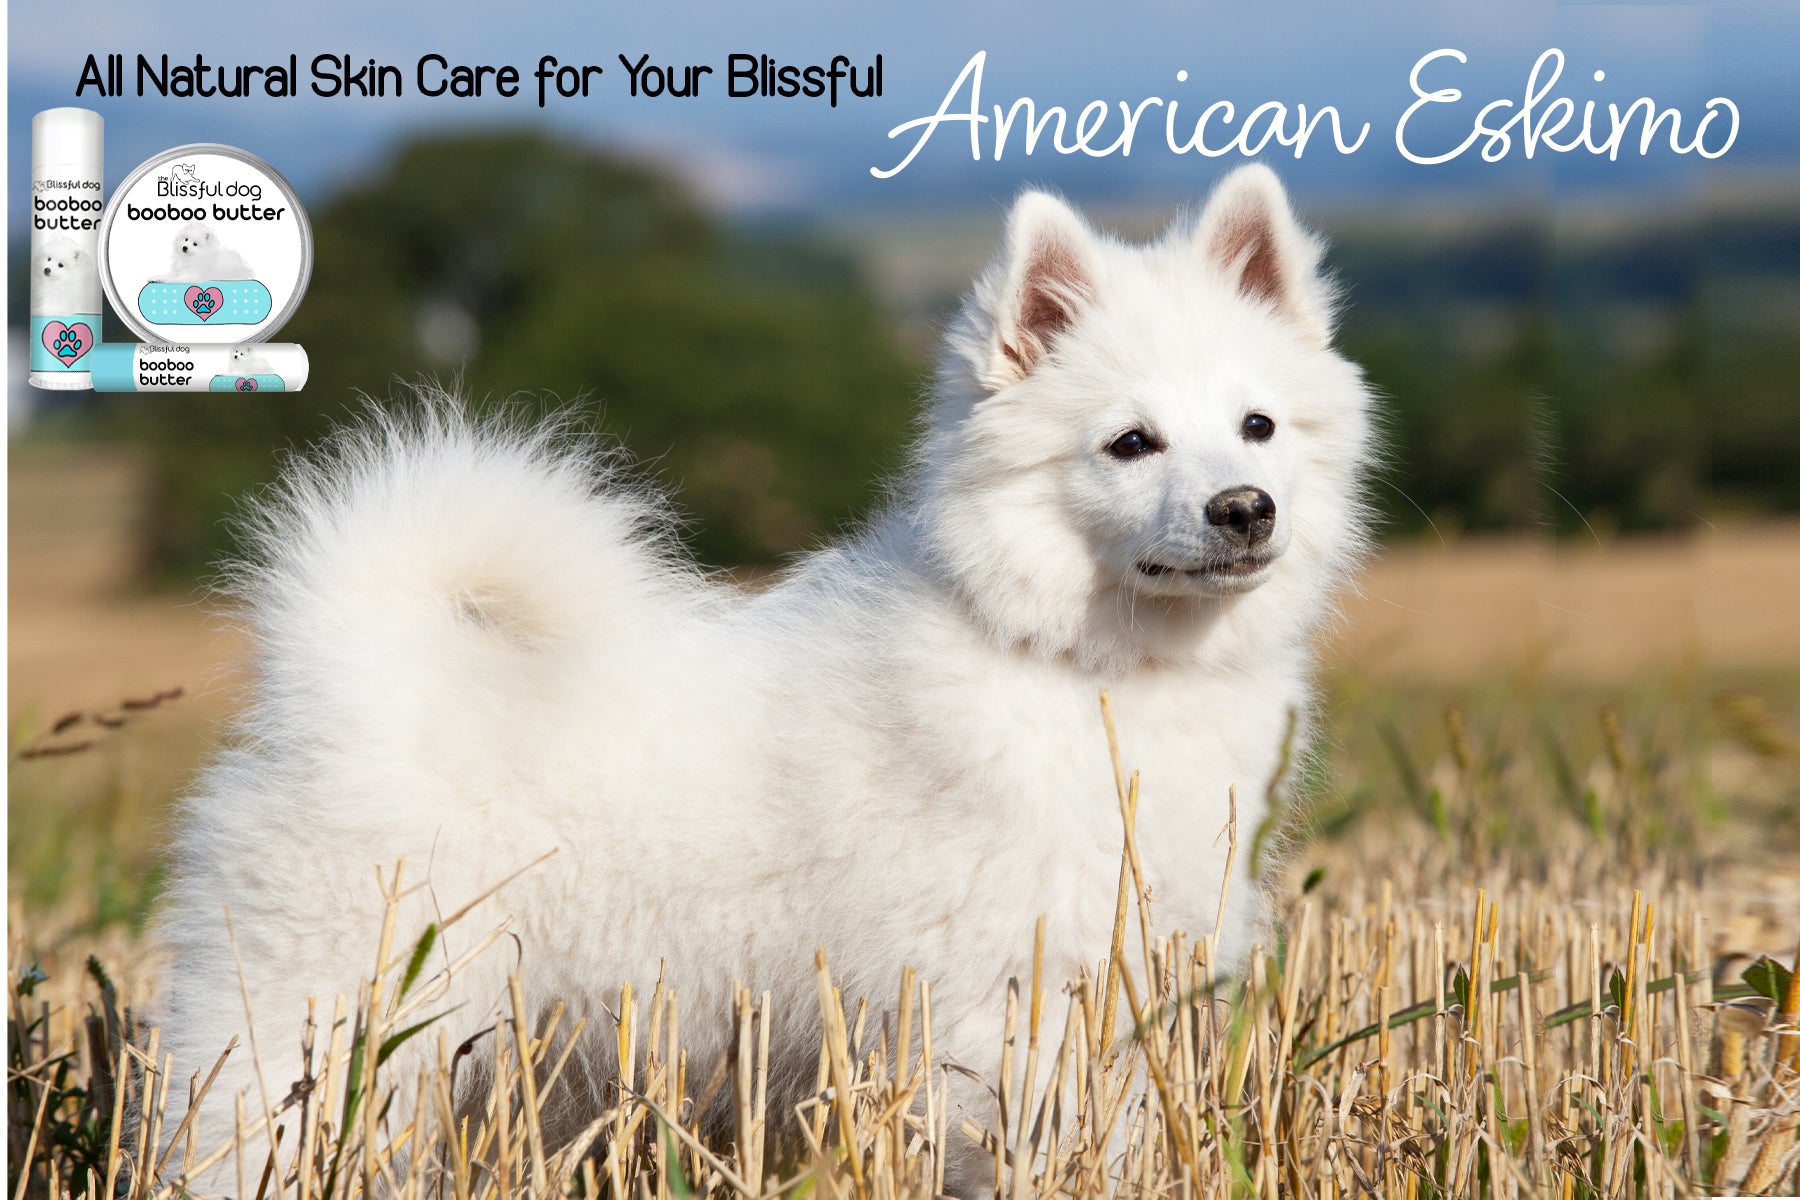 american eskimo dog skin care